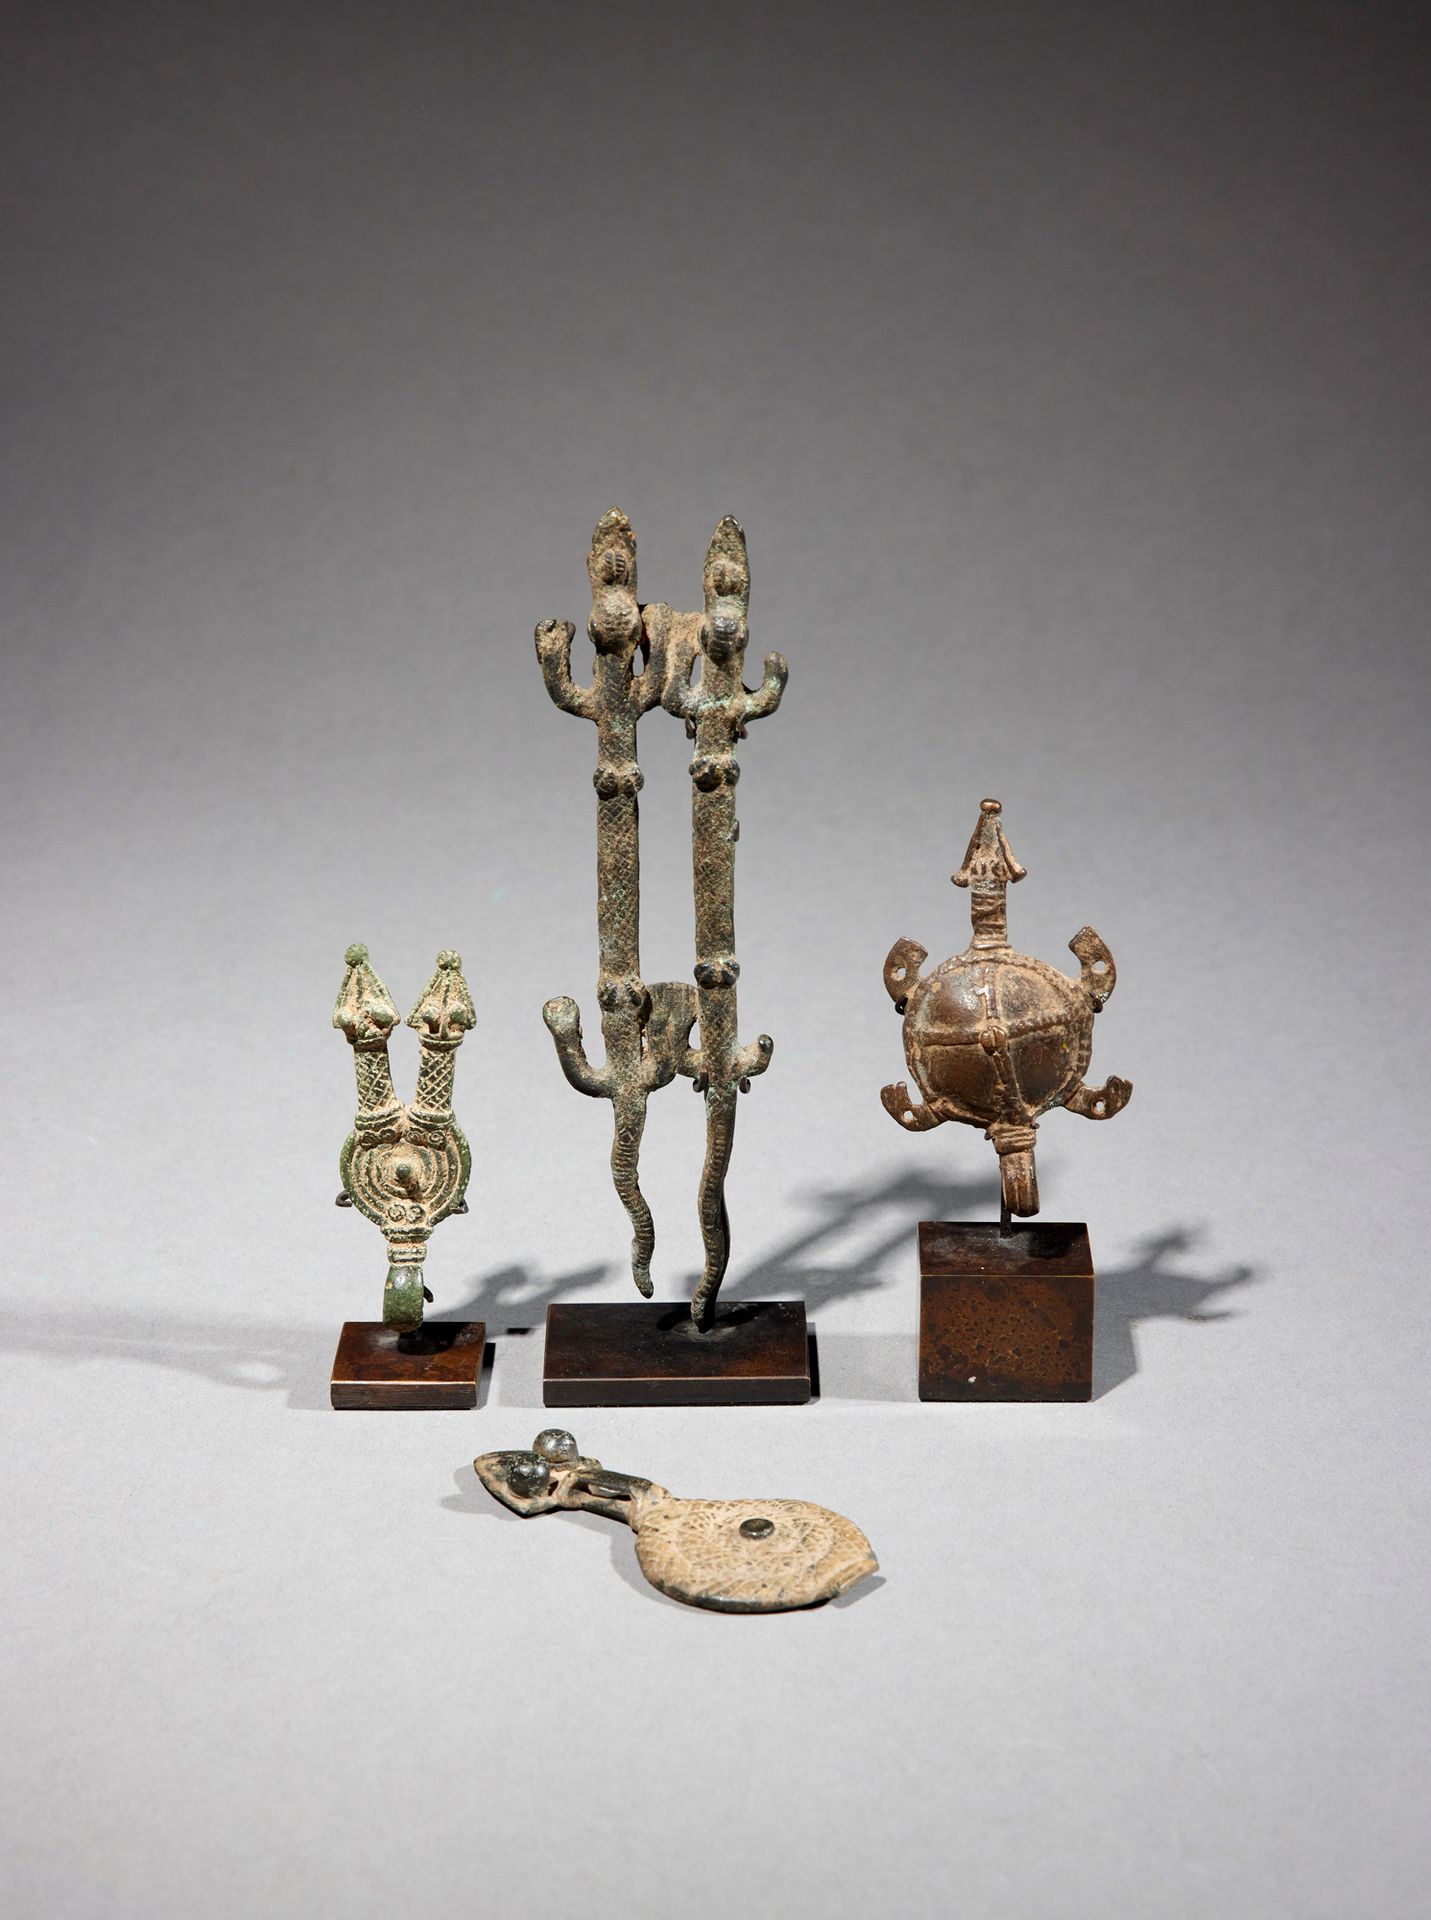 Null 四个甘氏文物

布基纳法索

铜质

H.7至15厘米



一套四件青铜甘器，有一只乌龟、一对蜥蜴和两条盘蛇，其中一条有两个头。